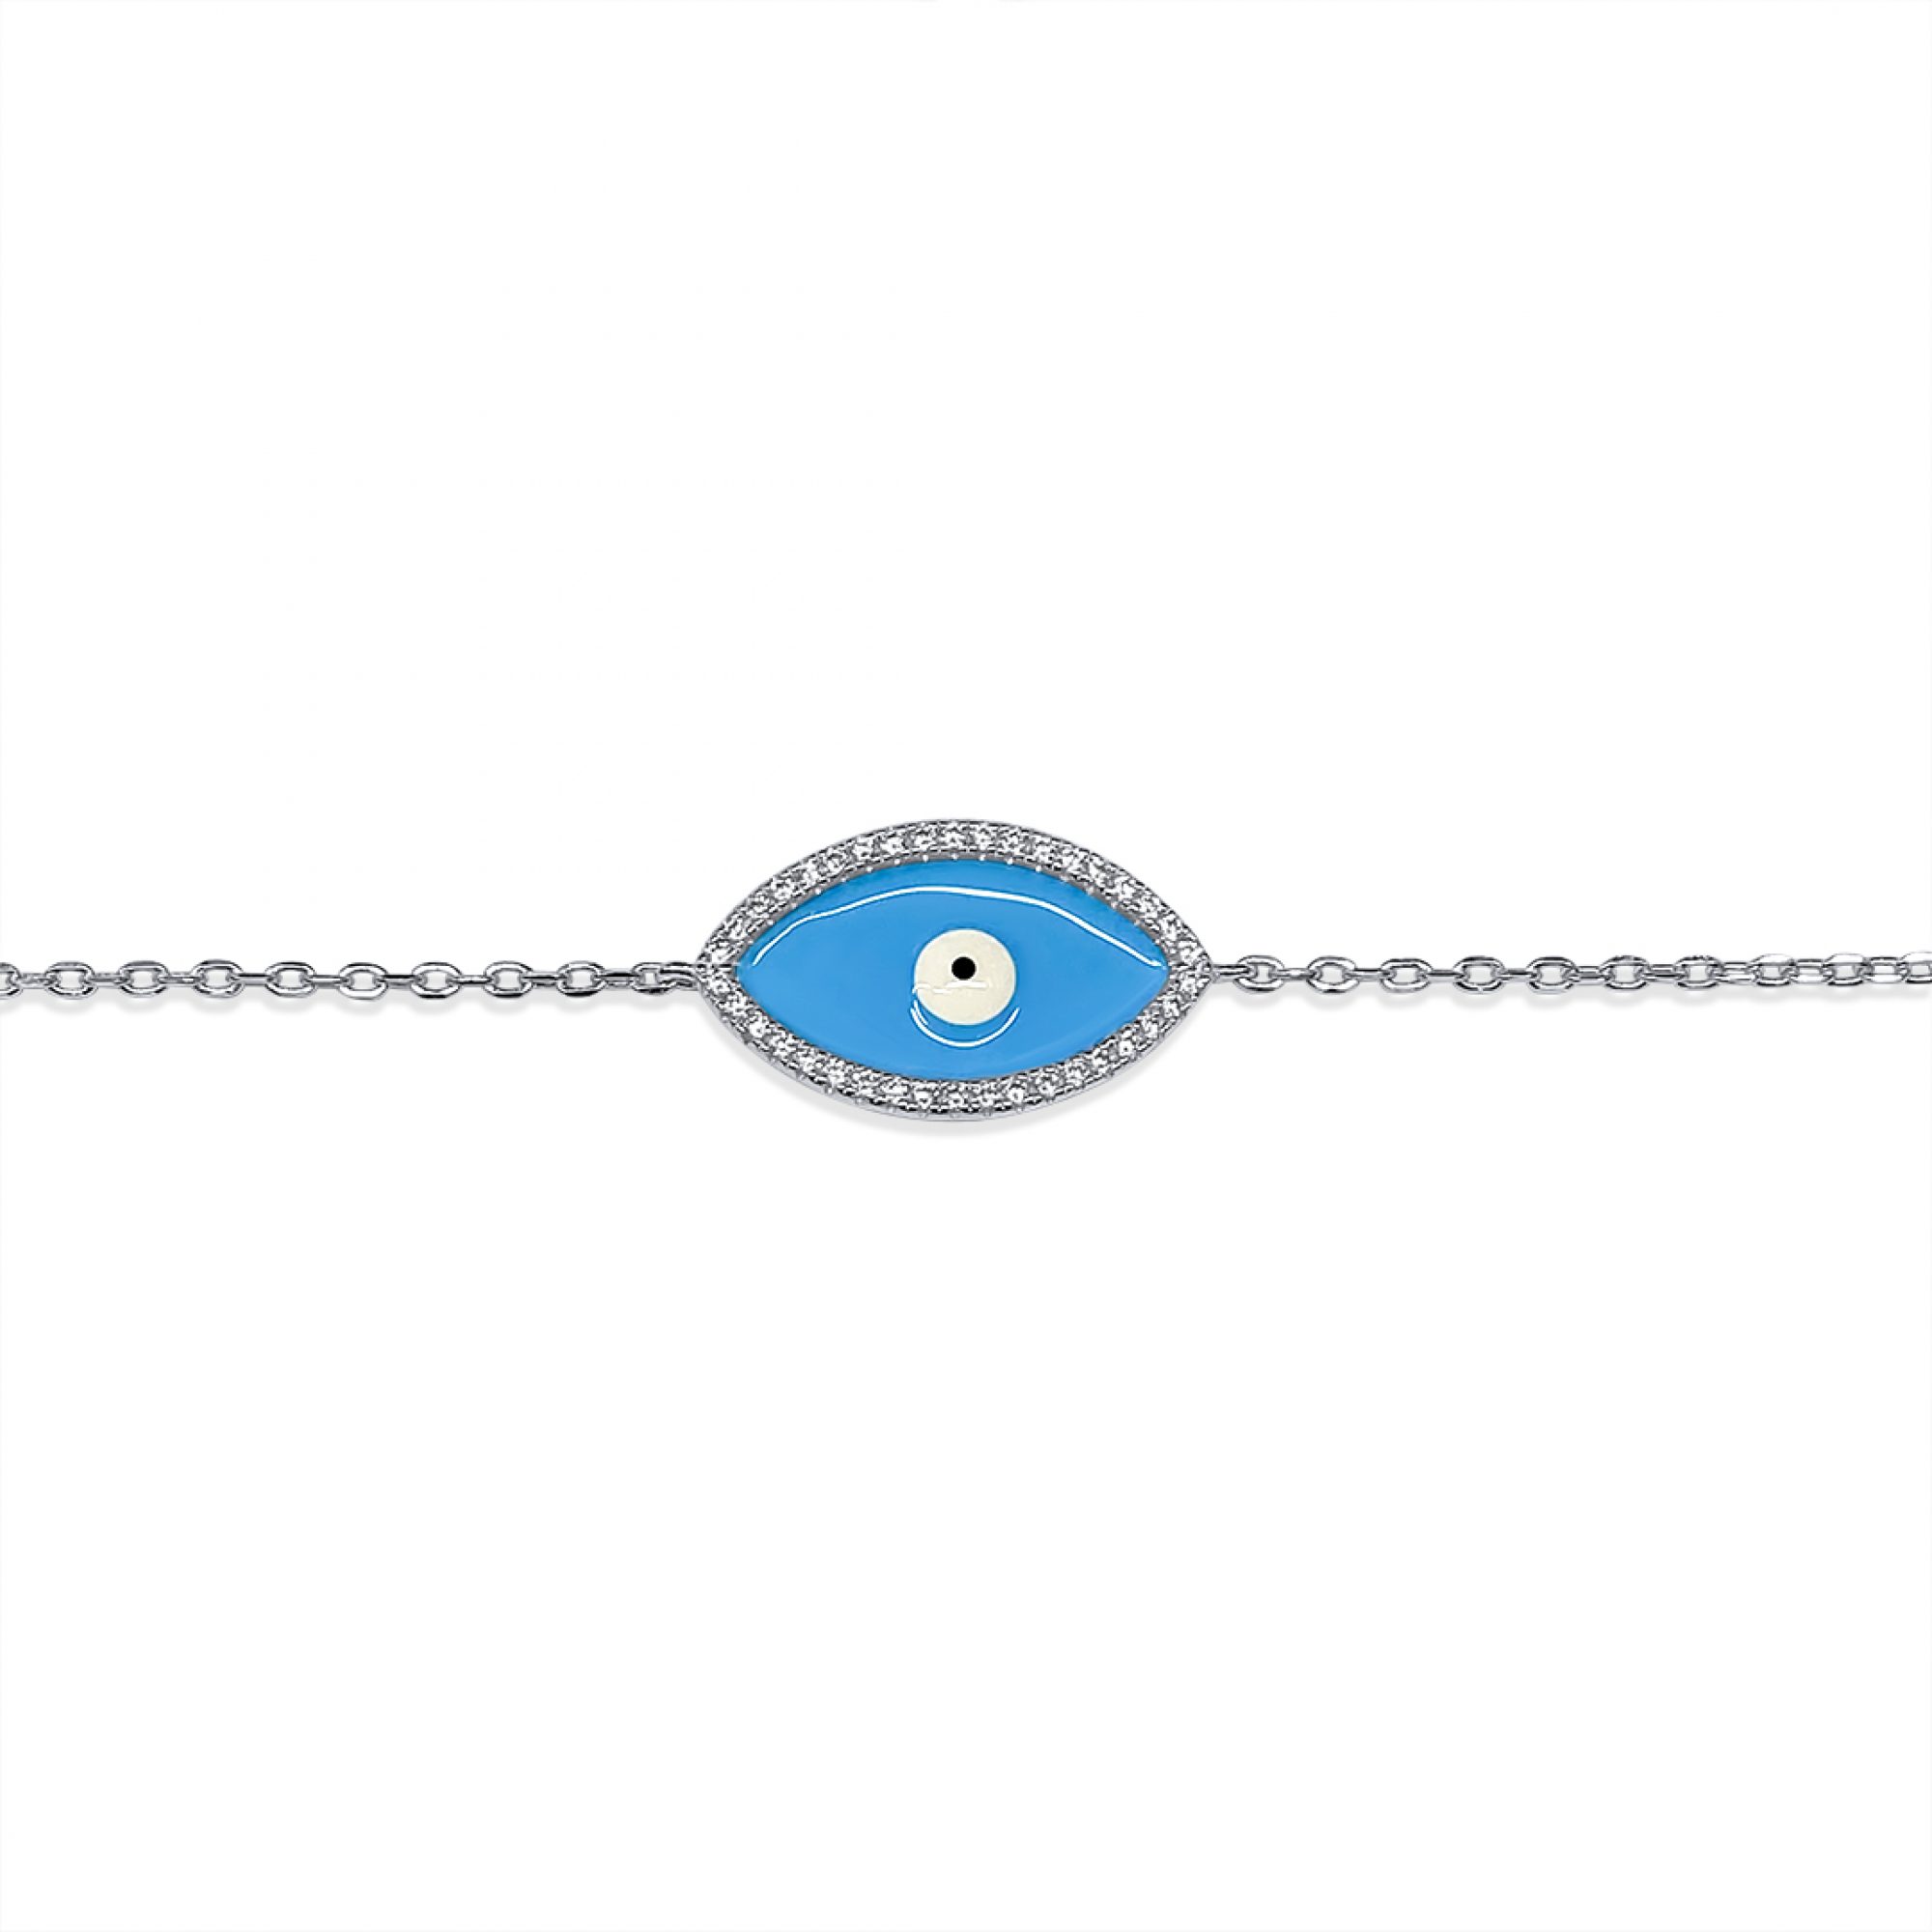 Eye bracelet with zircon stones